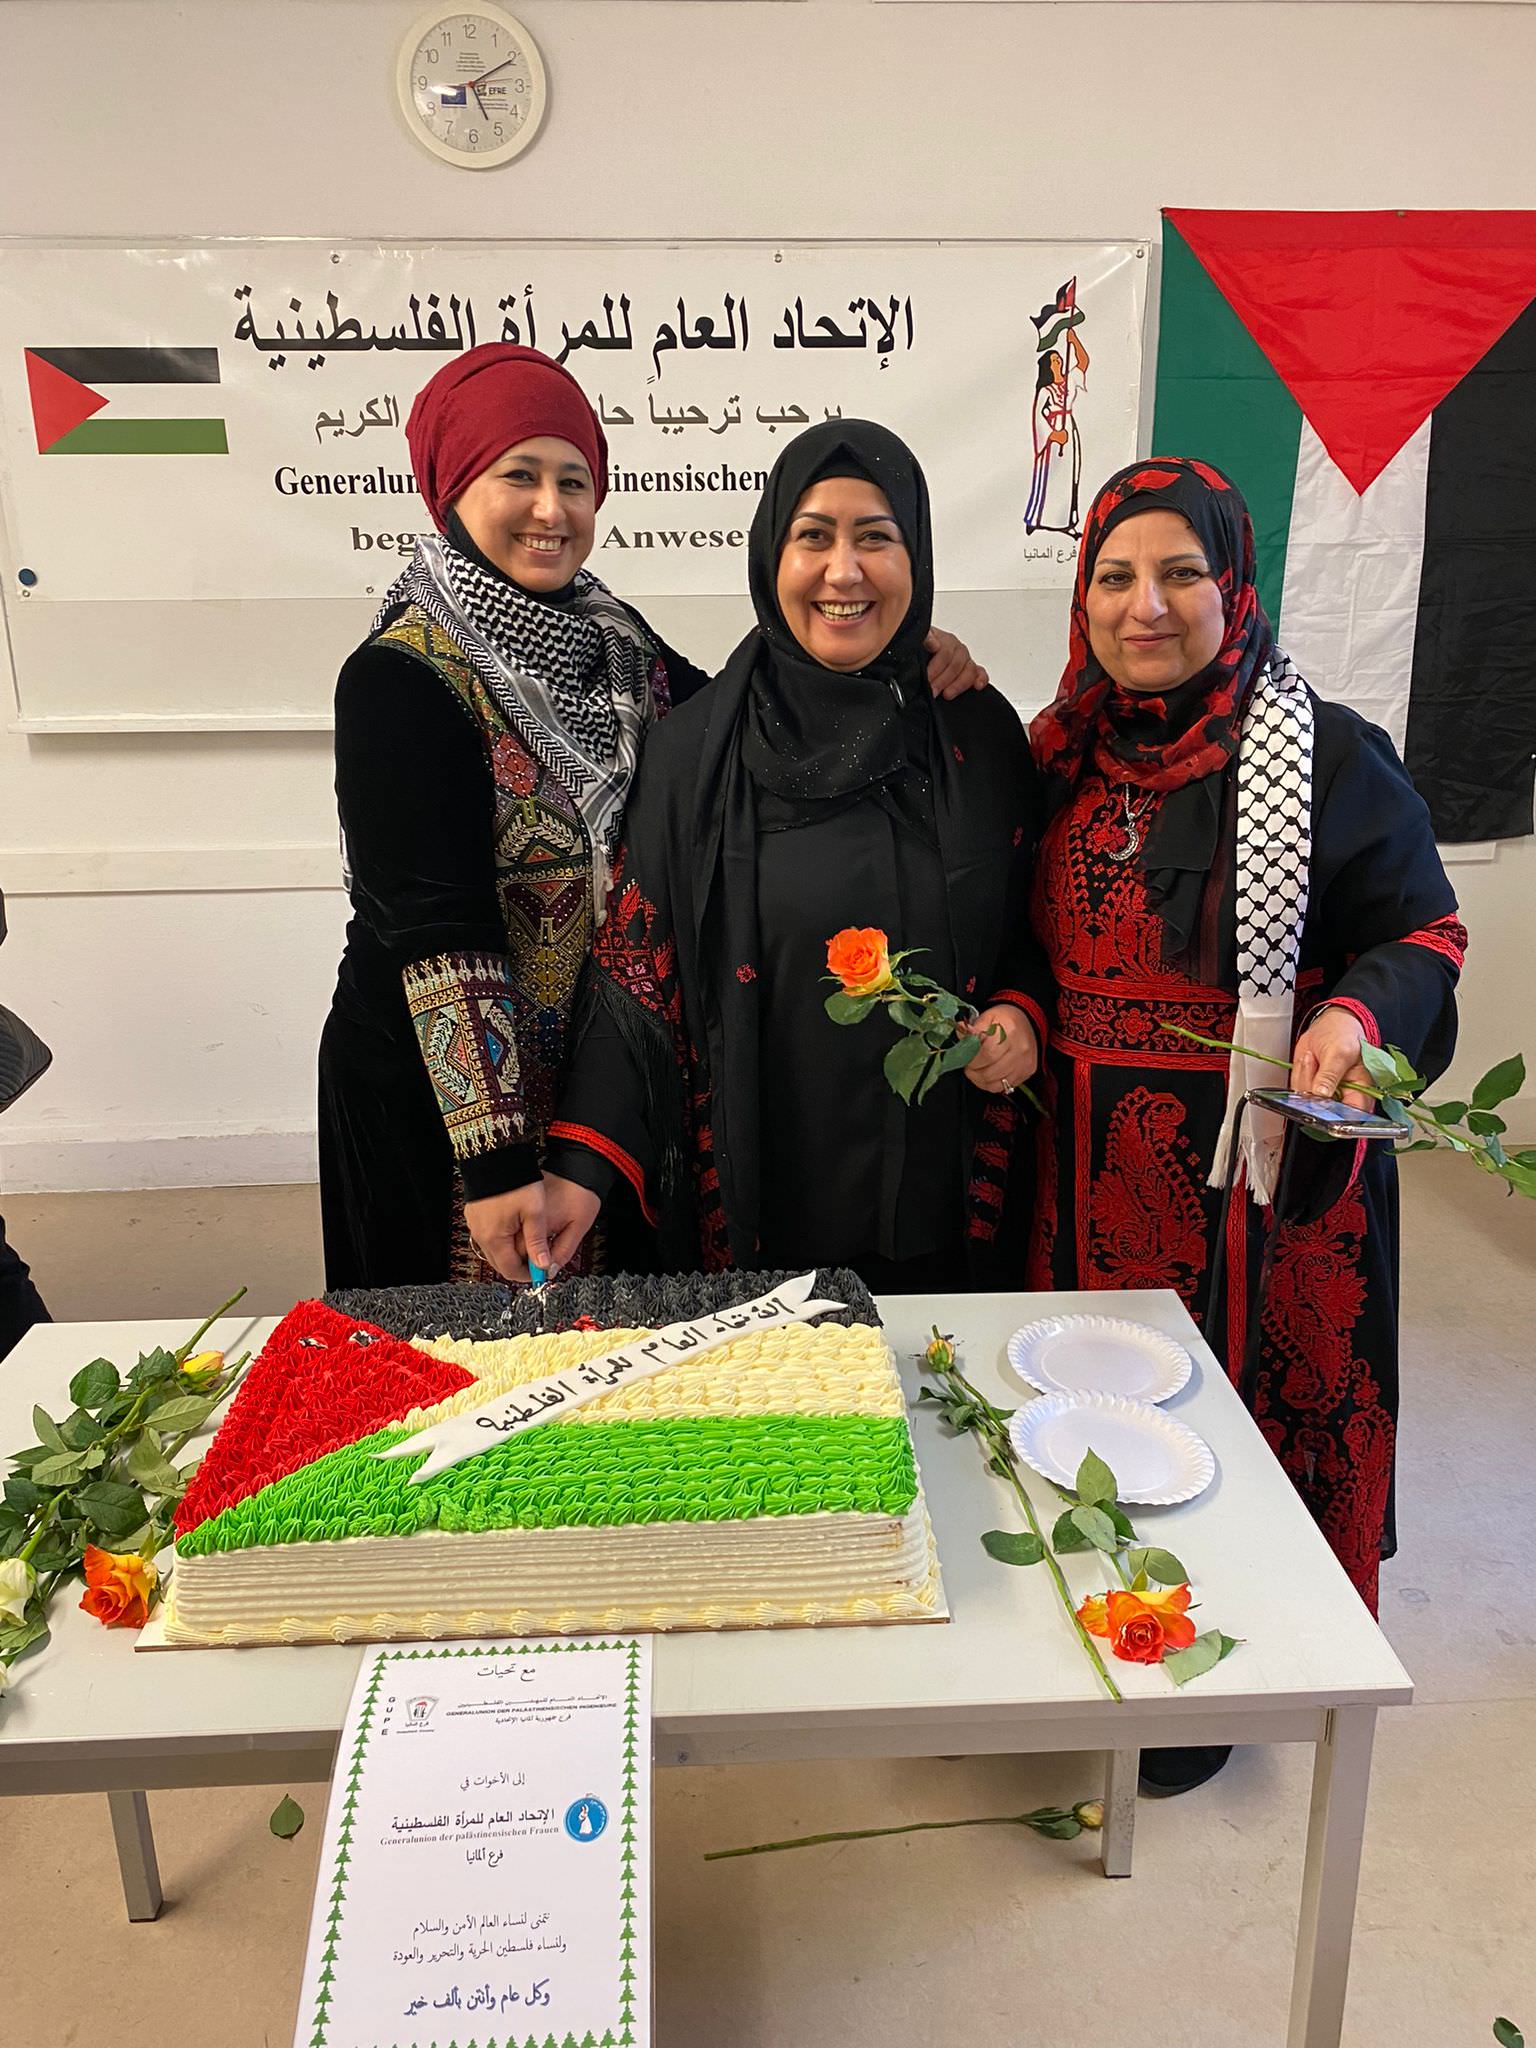 الإتحاد العام للمرأة الفلسطينية فرع جمهورية ألمانيا الإتحادية  يحتفل بيوم المرأة العالمي في برلين